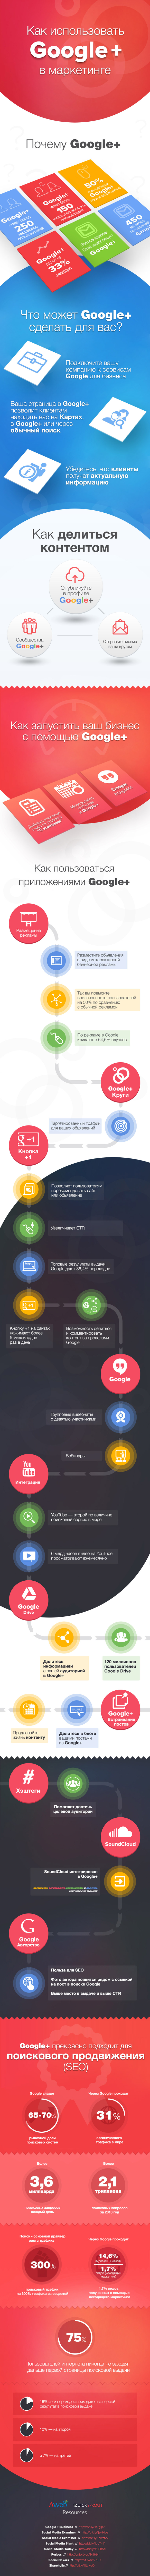 Инфографика: маркетинг в Google+